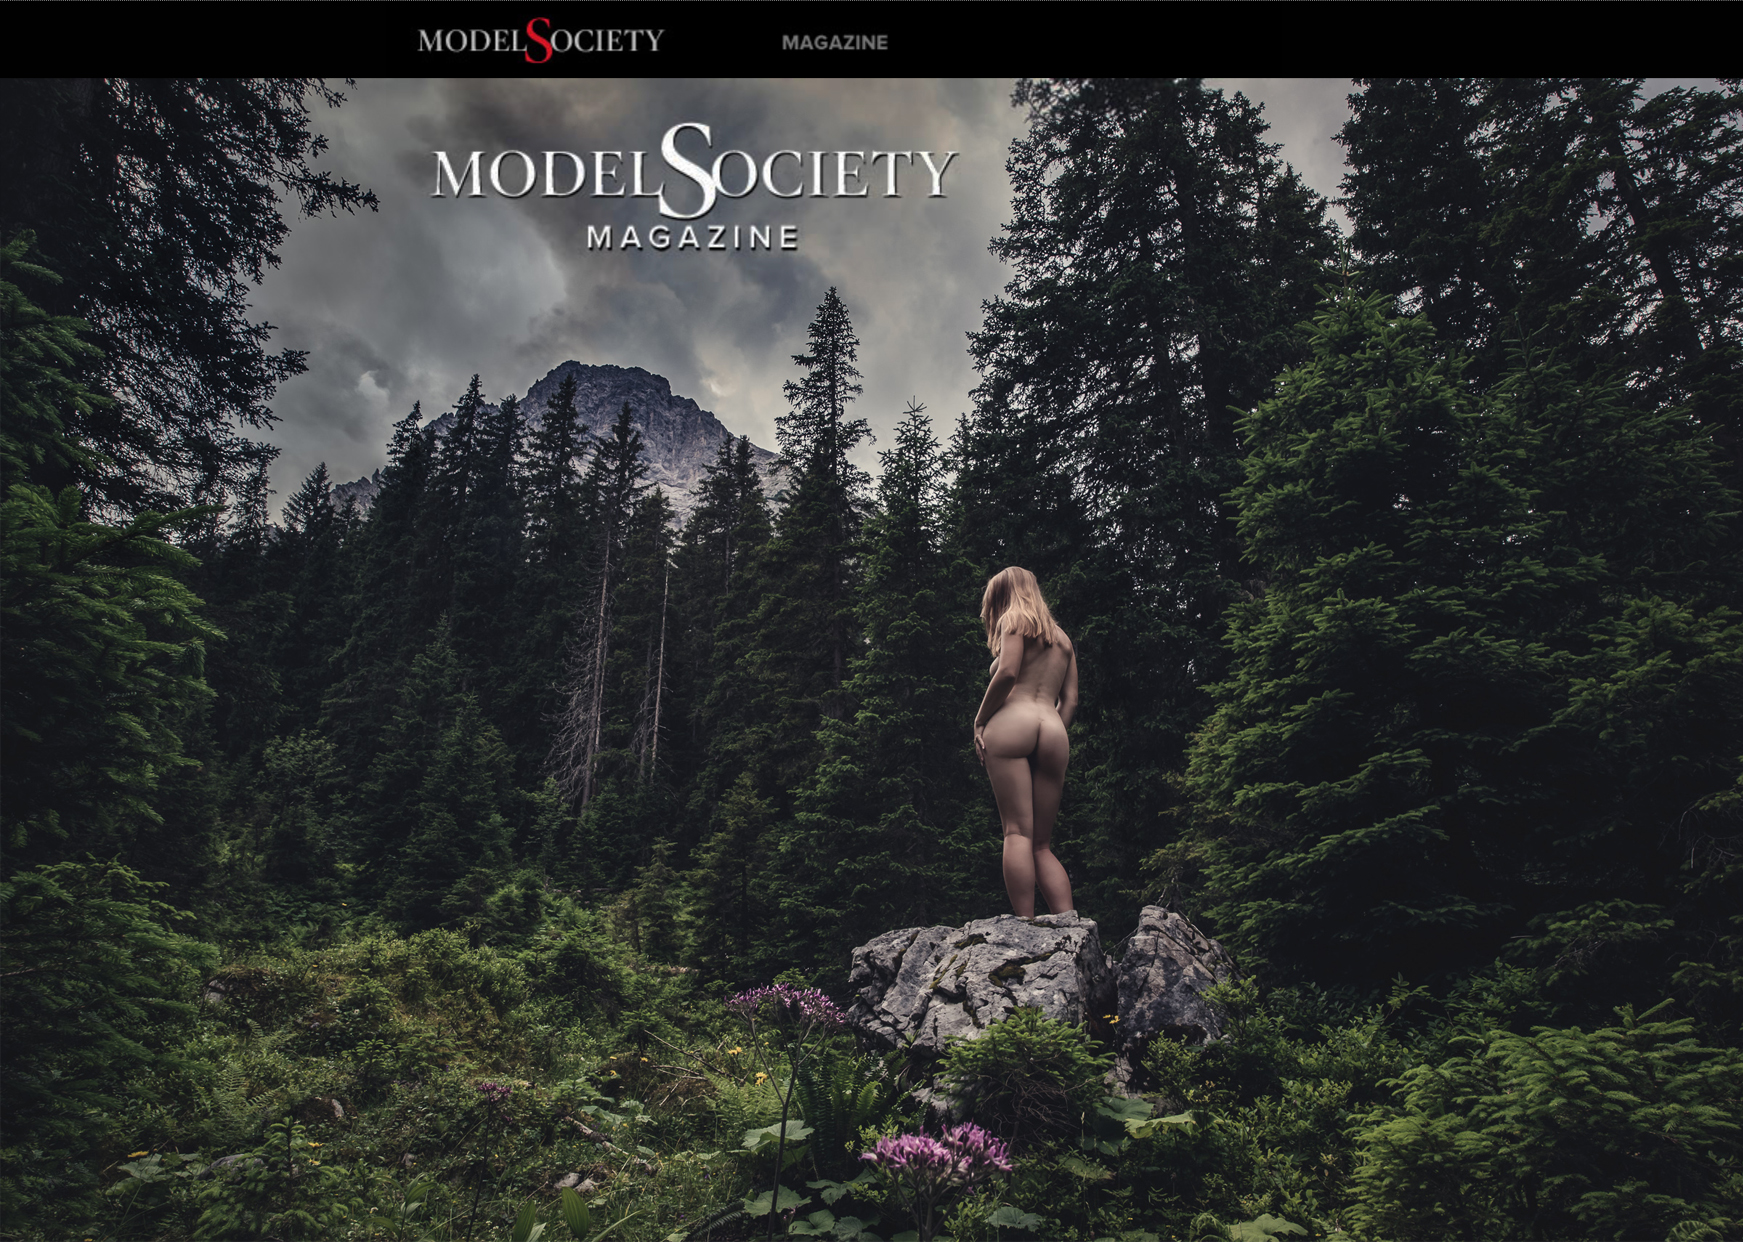 Publication: Model Society Magazine